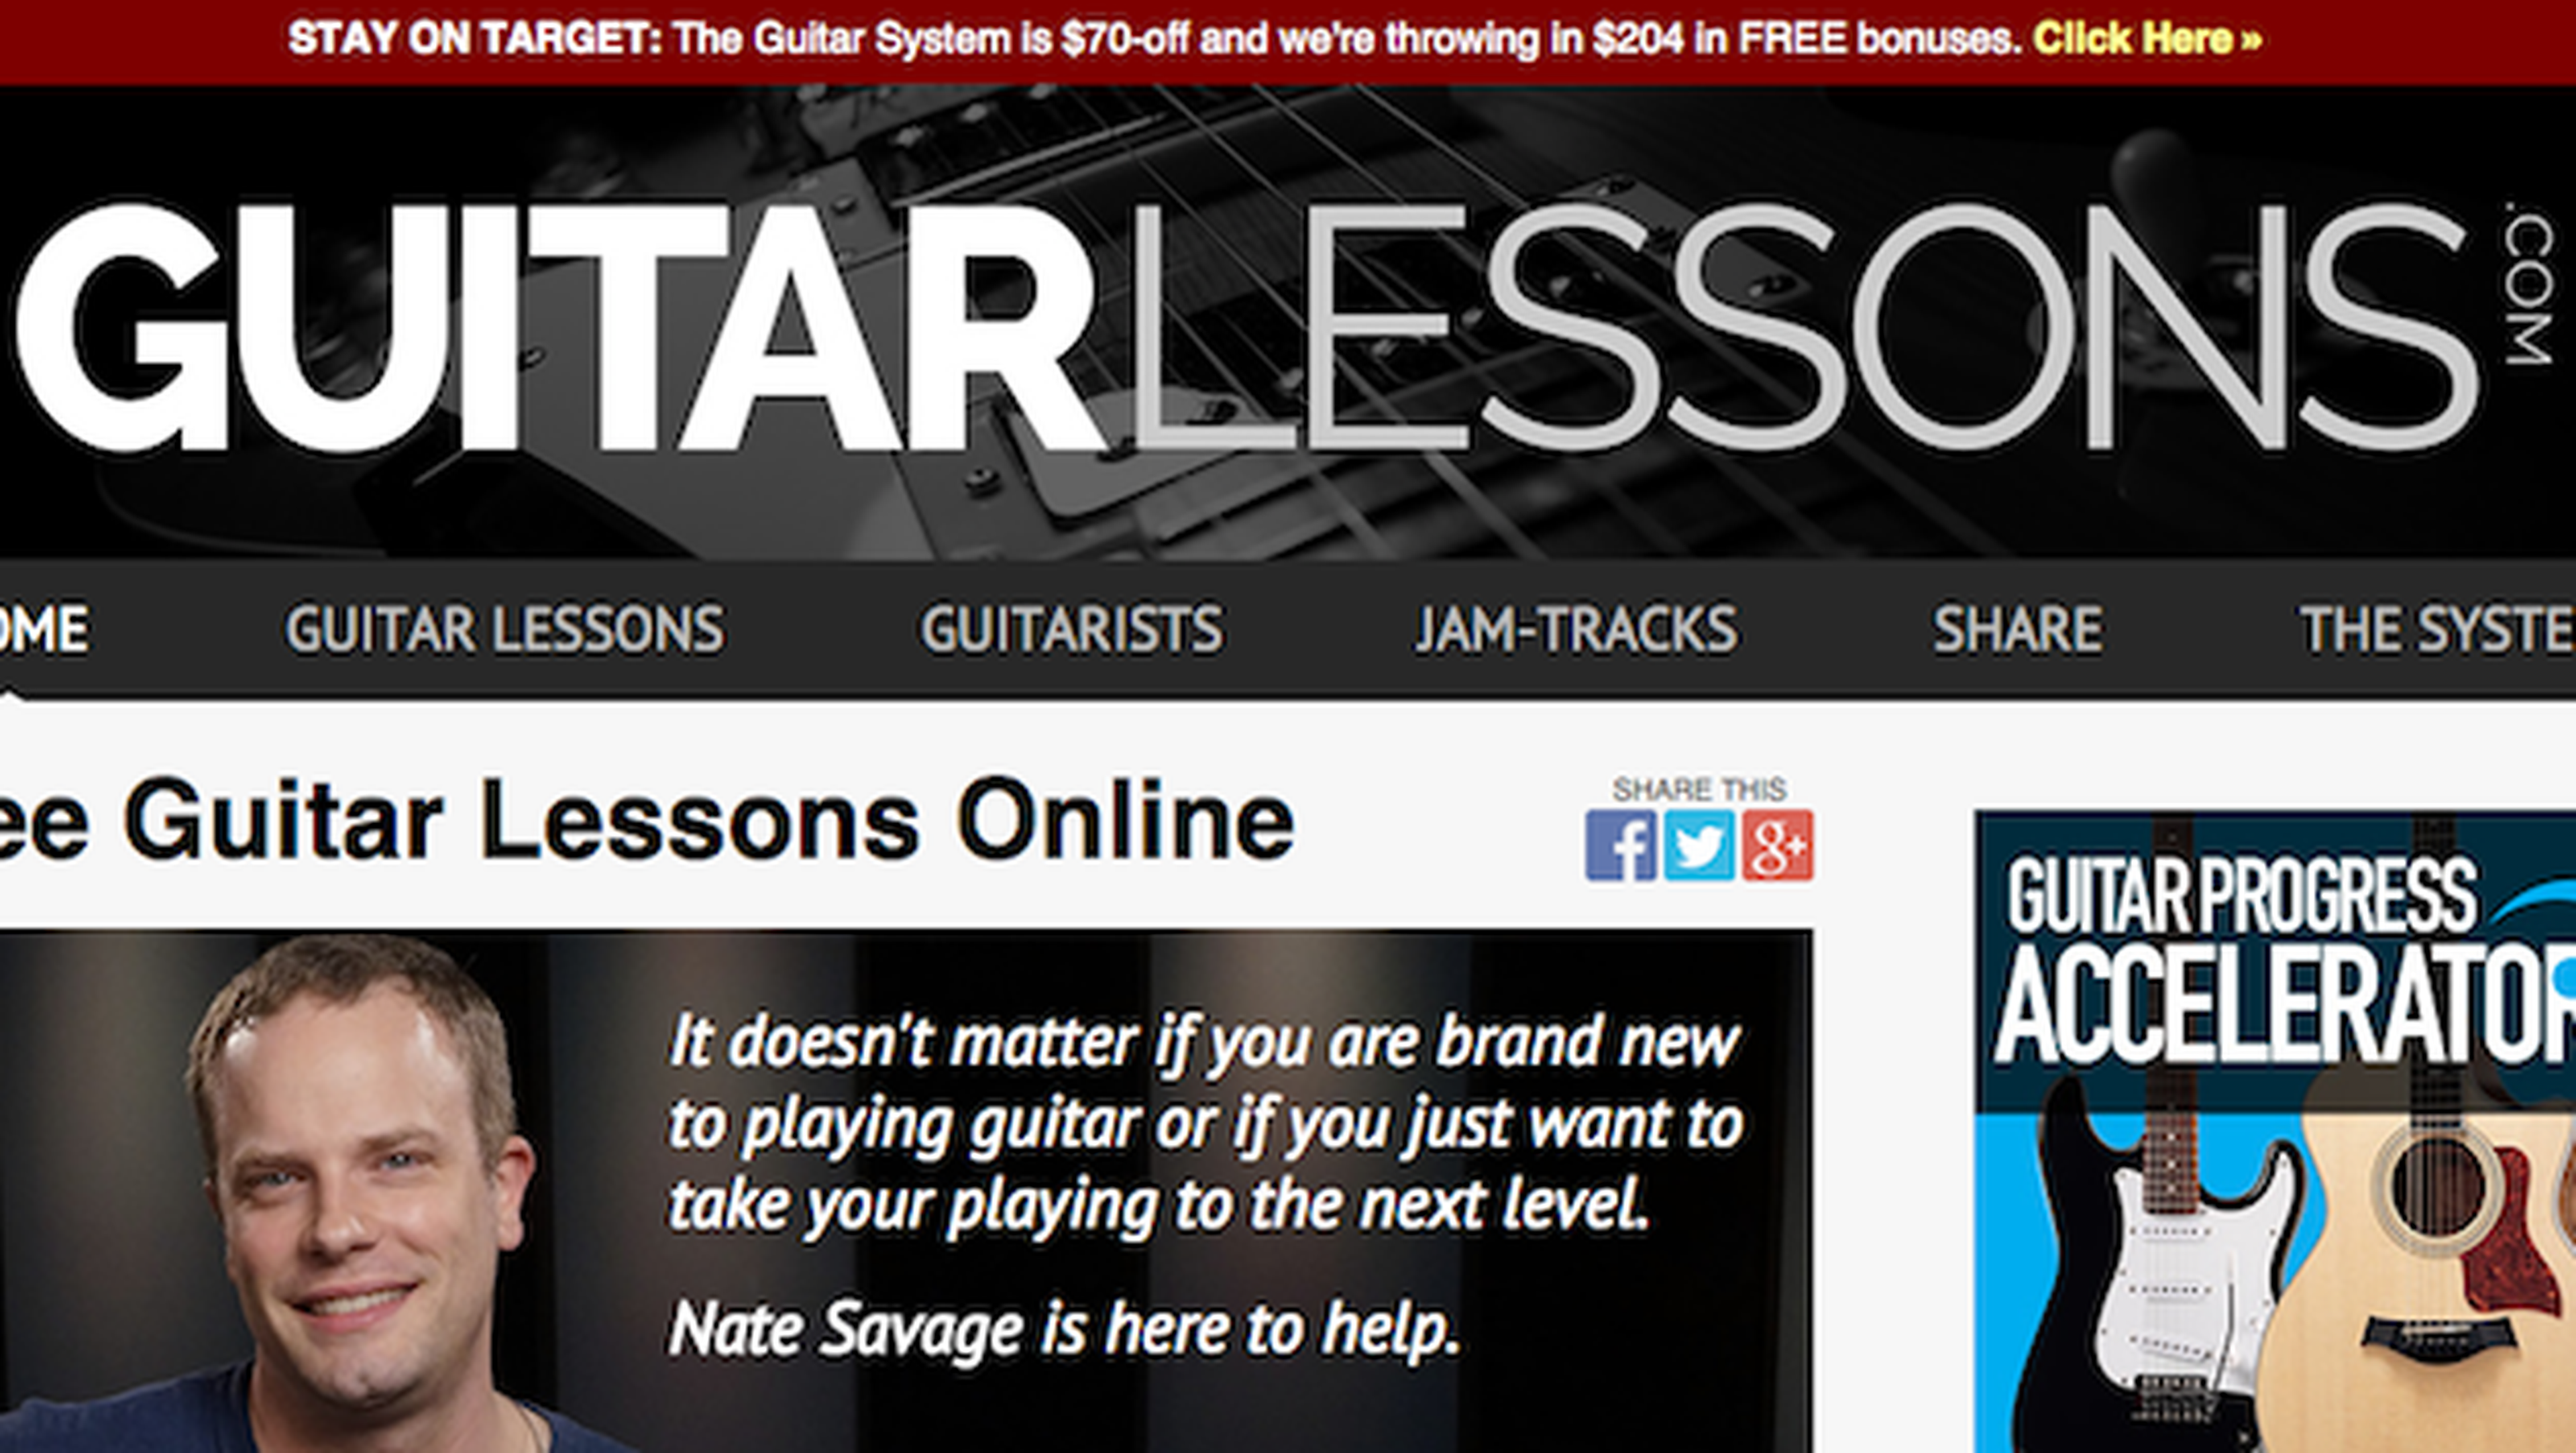 GuitarLessons.com